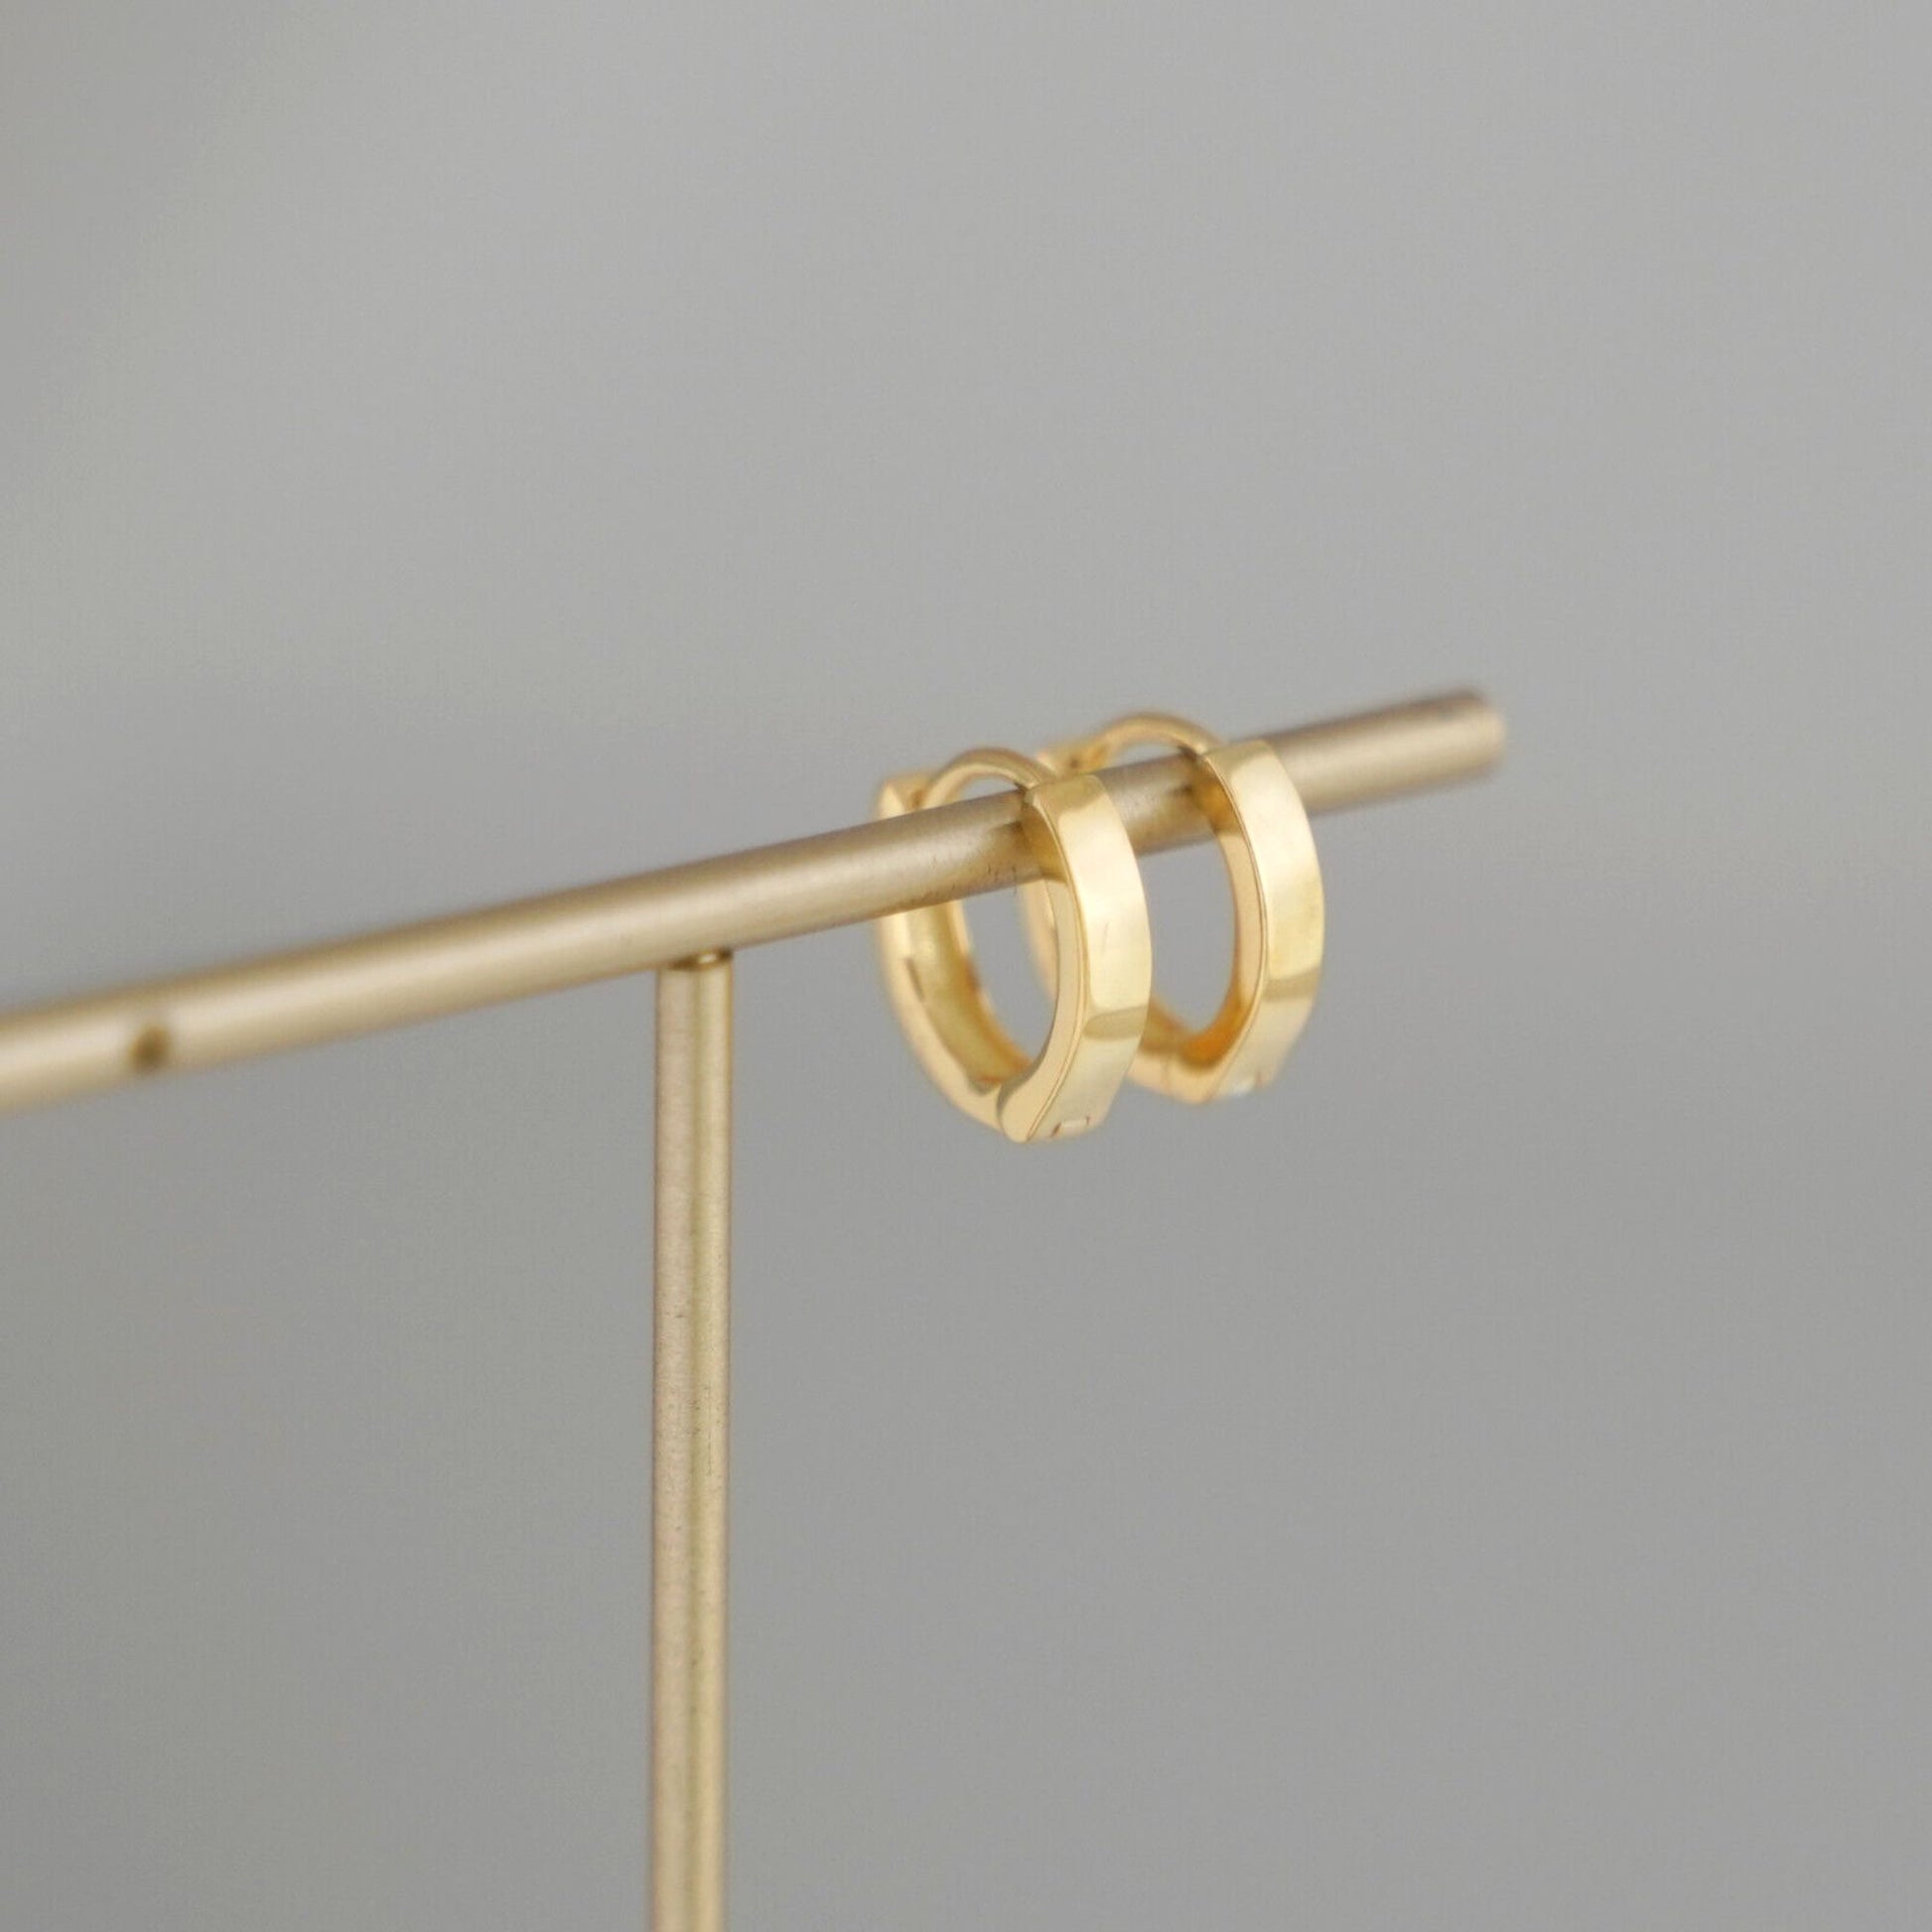 18K Gold Huggie Earrings on Sterling Silver Base, Small 8mm Hoop, 2mm Band, Unisex - sugarkittenlondon